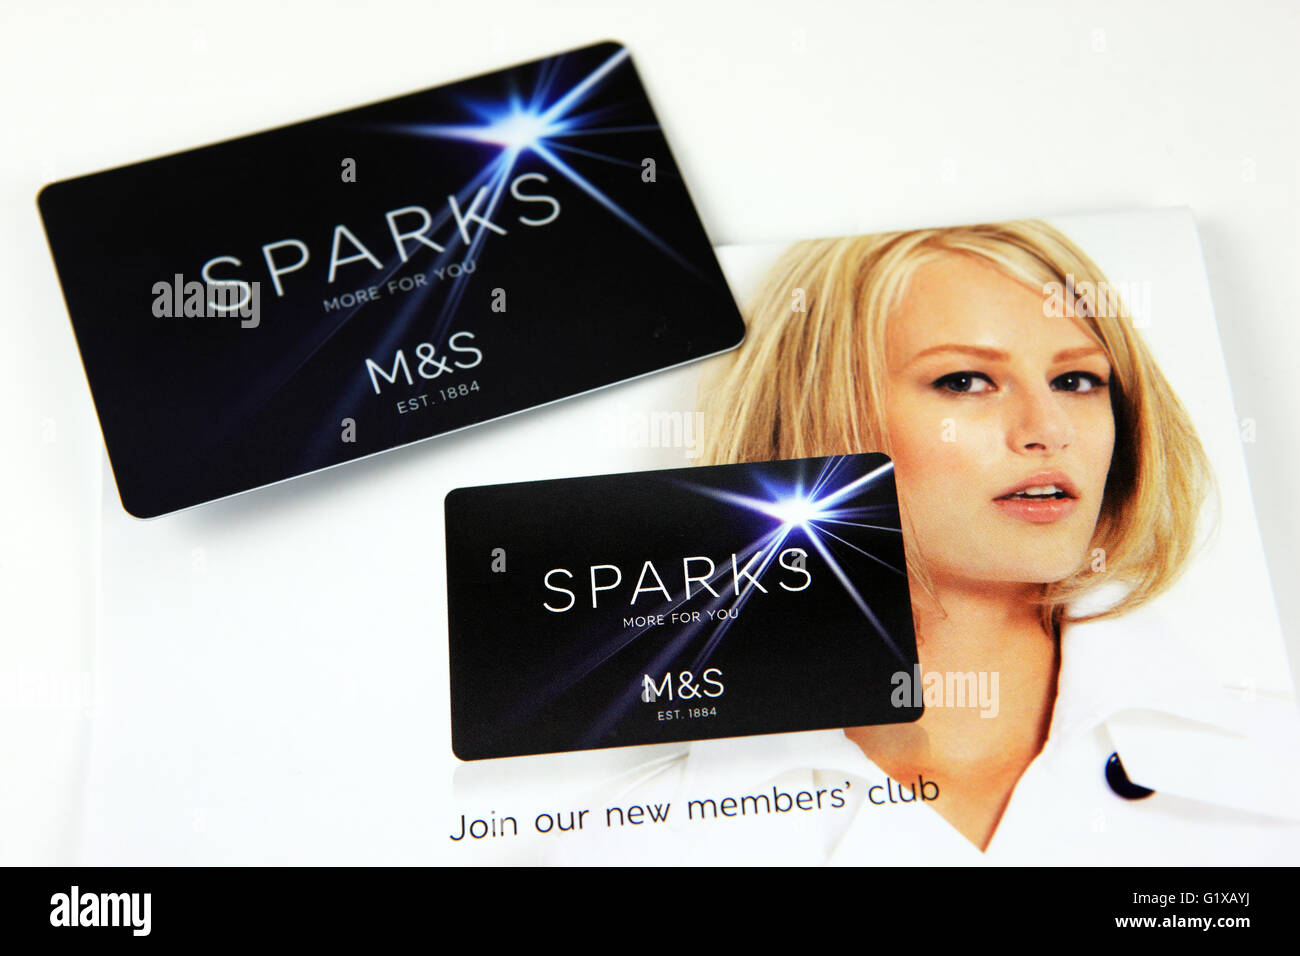 Marks & Spencer's carte Sparks et la documentation promotionnelle Banque D'Images